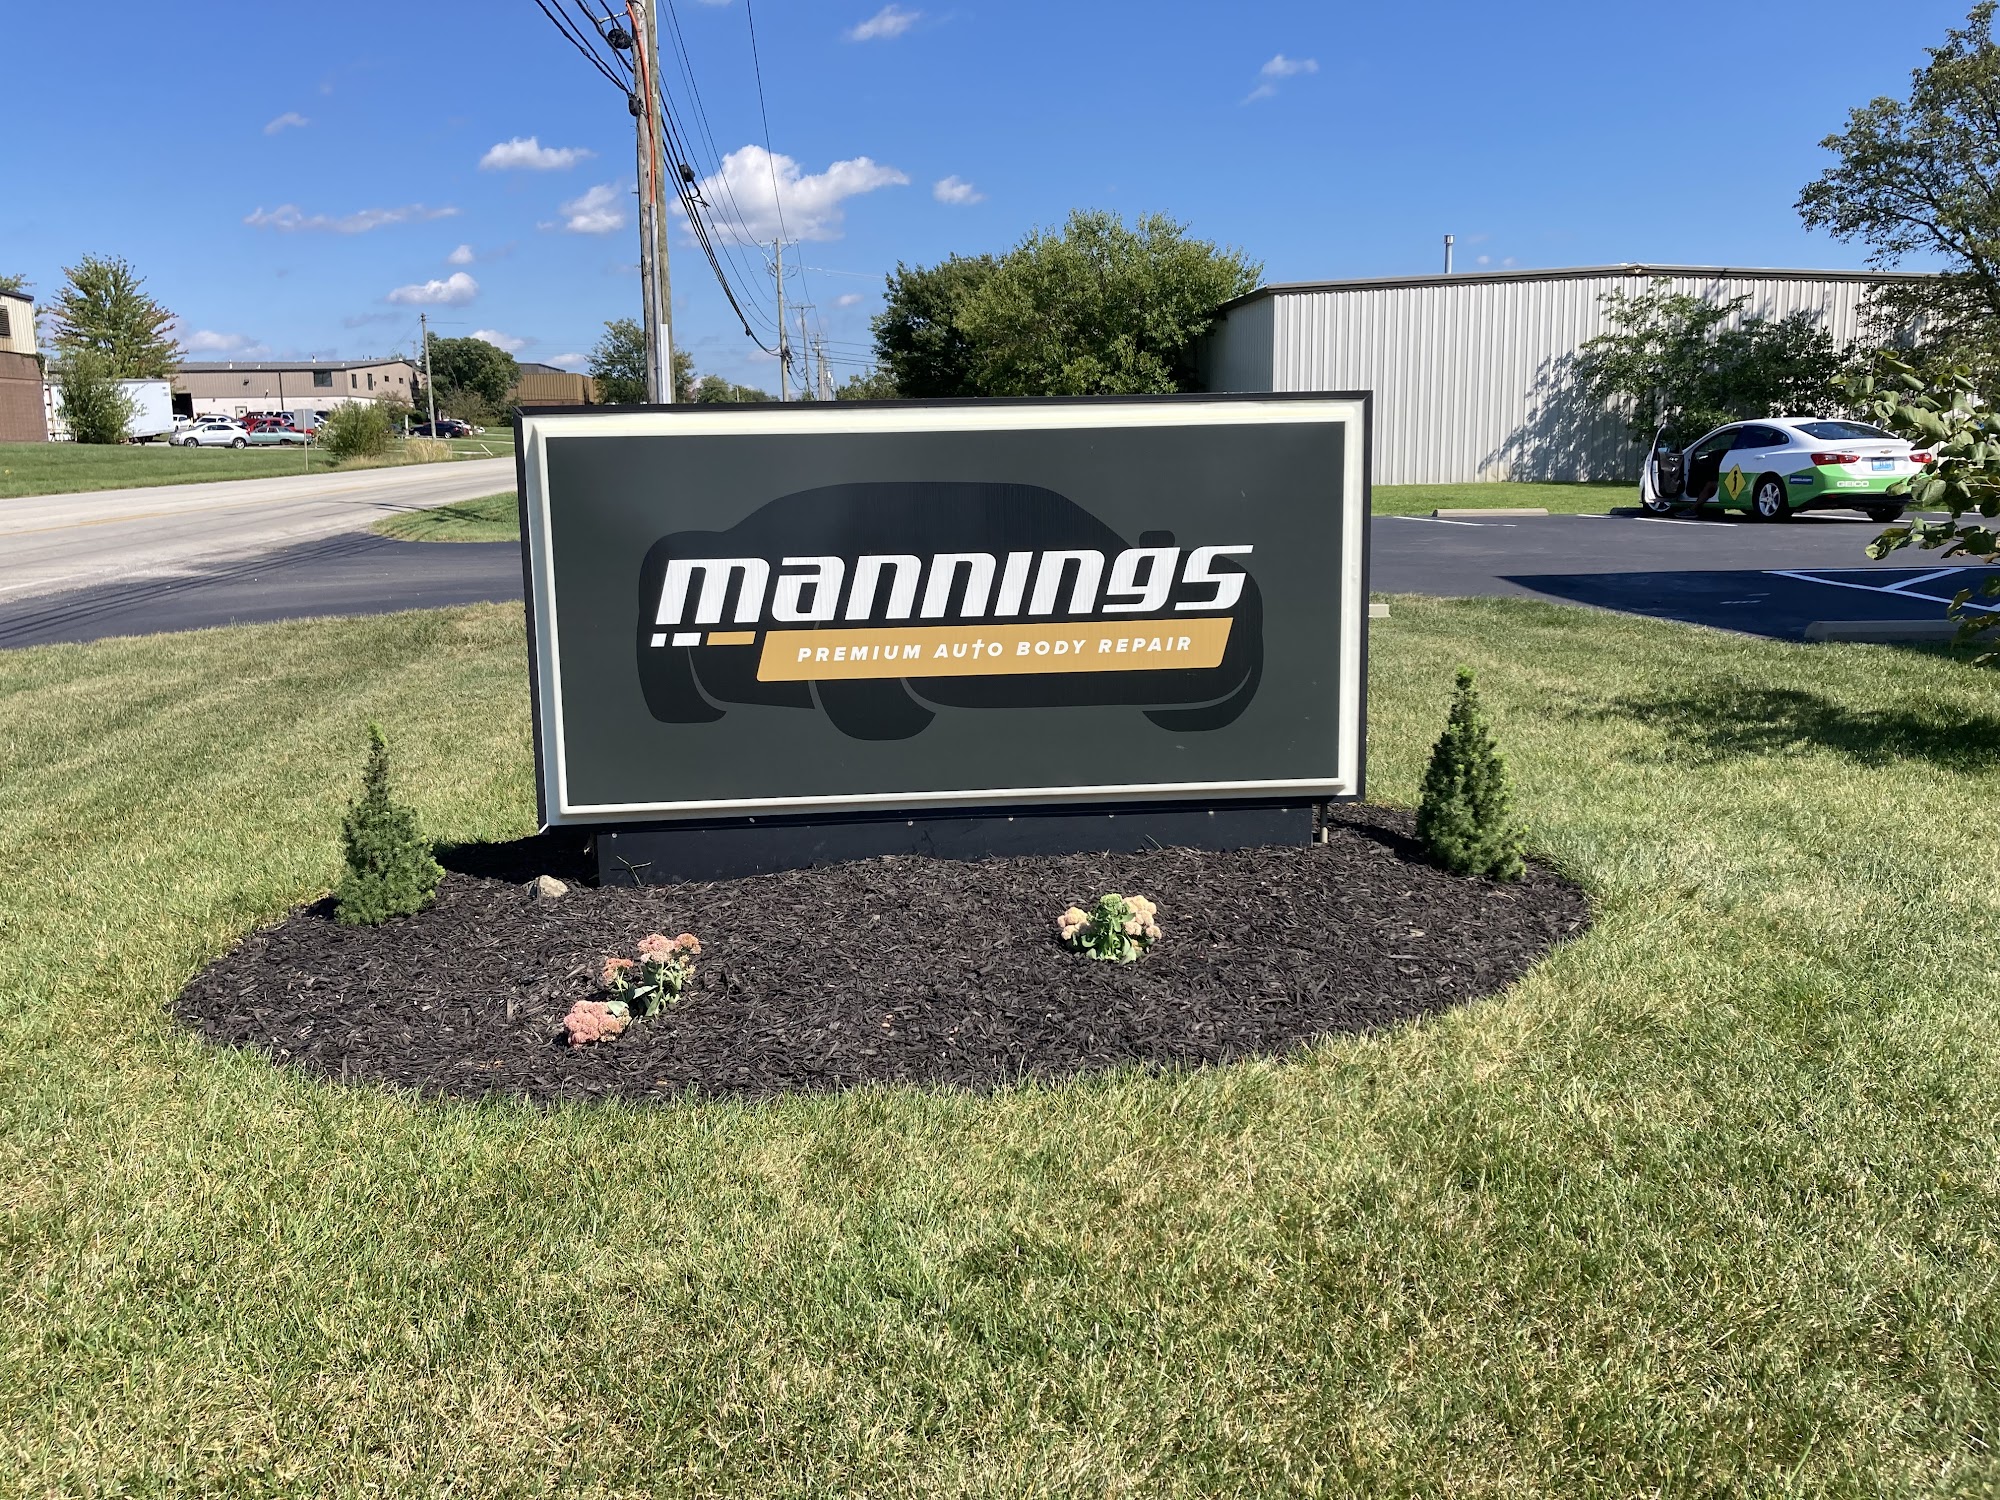 Mannings Premium Auto Body Repair